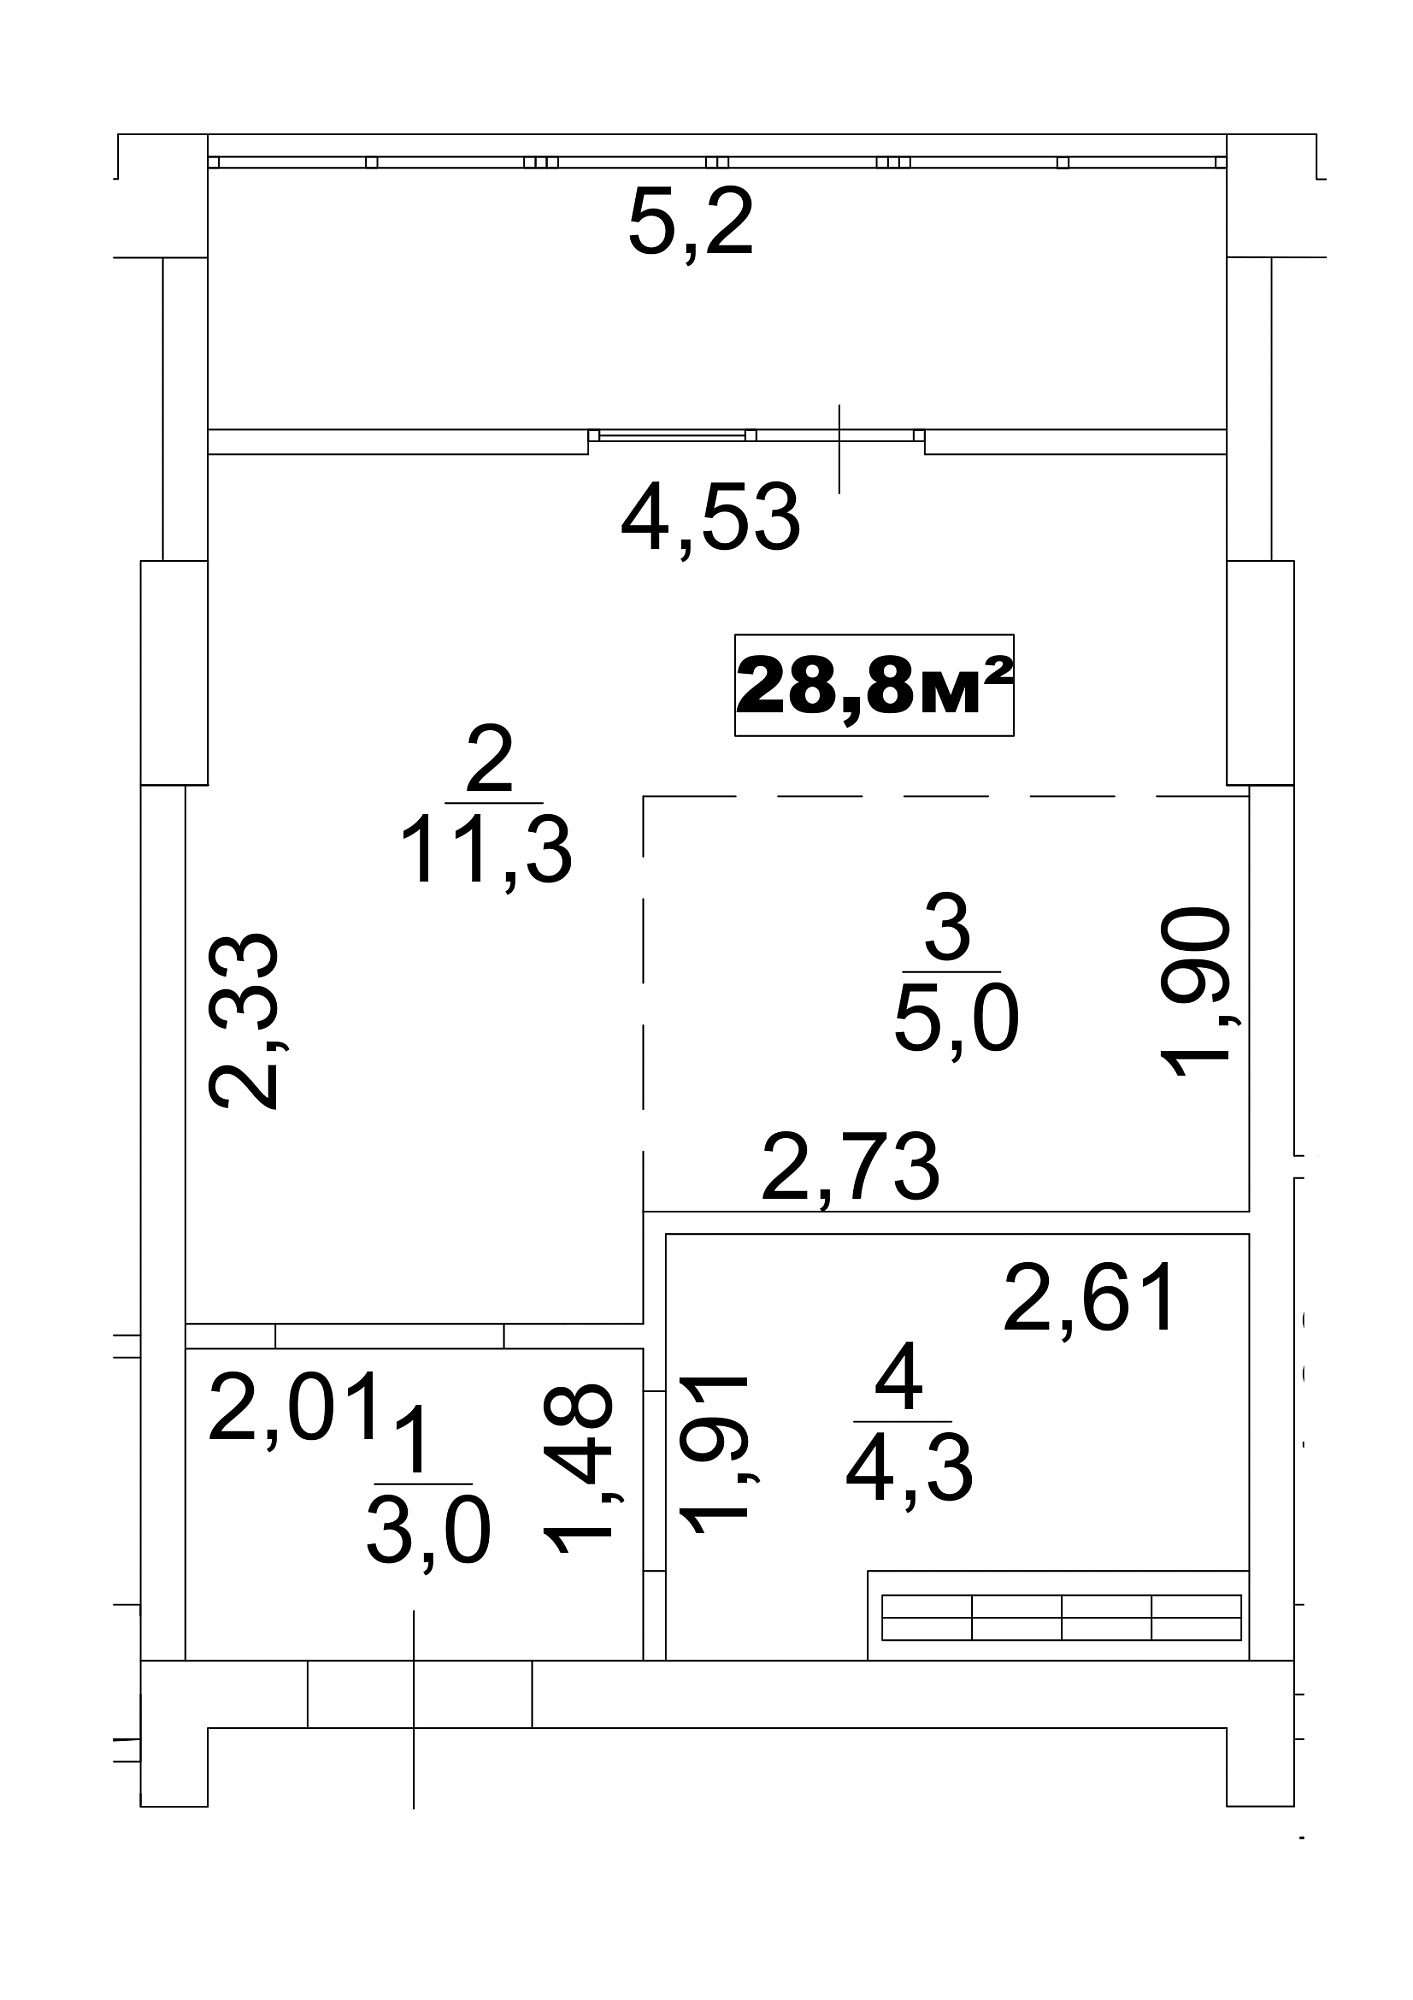 Планування Smart-квартира площею 28.8м2, AB-13-10/00083.